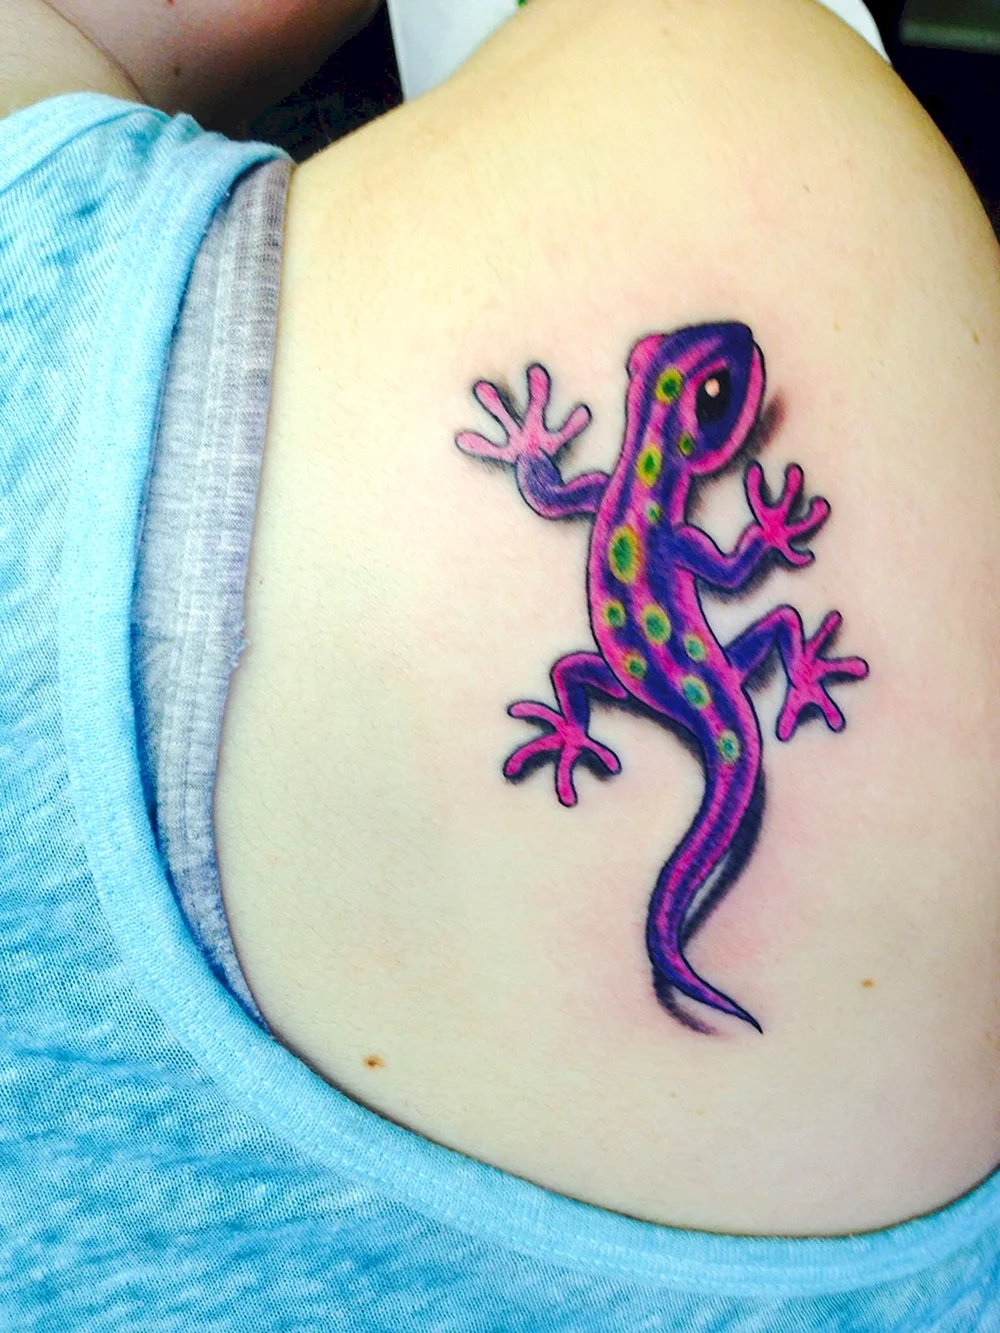 Lizard Tattoo